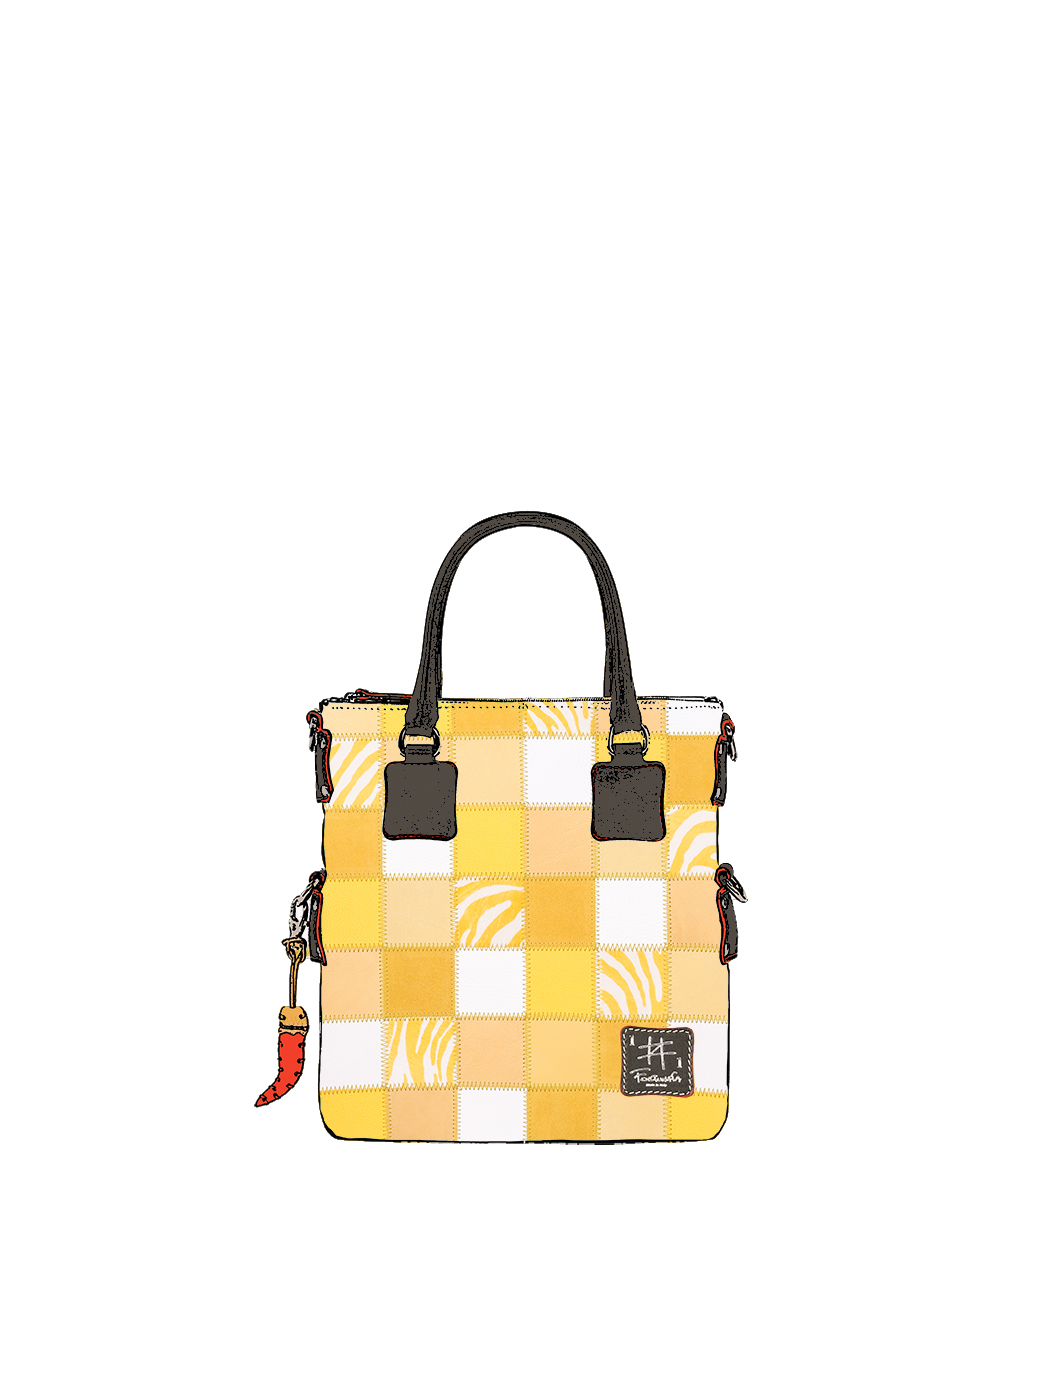 Дизайнерская мини - сумка из коллекции Fortunata в стиле пэчворк желто - бежевого цвета